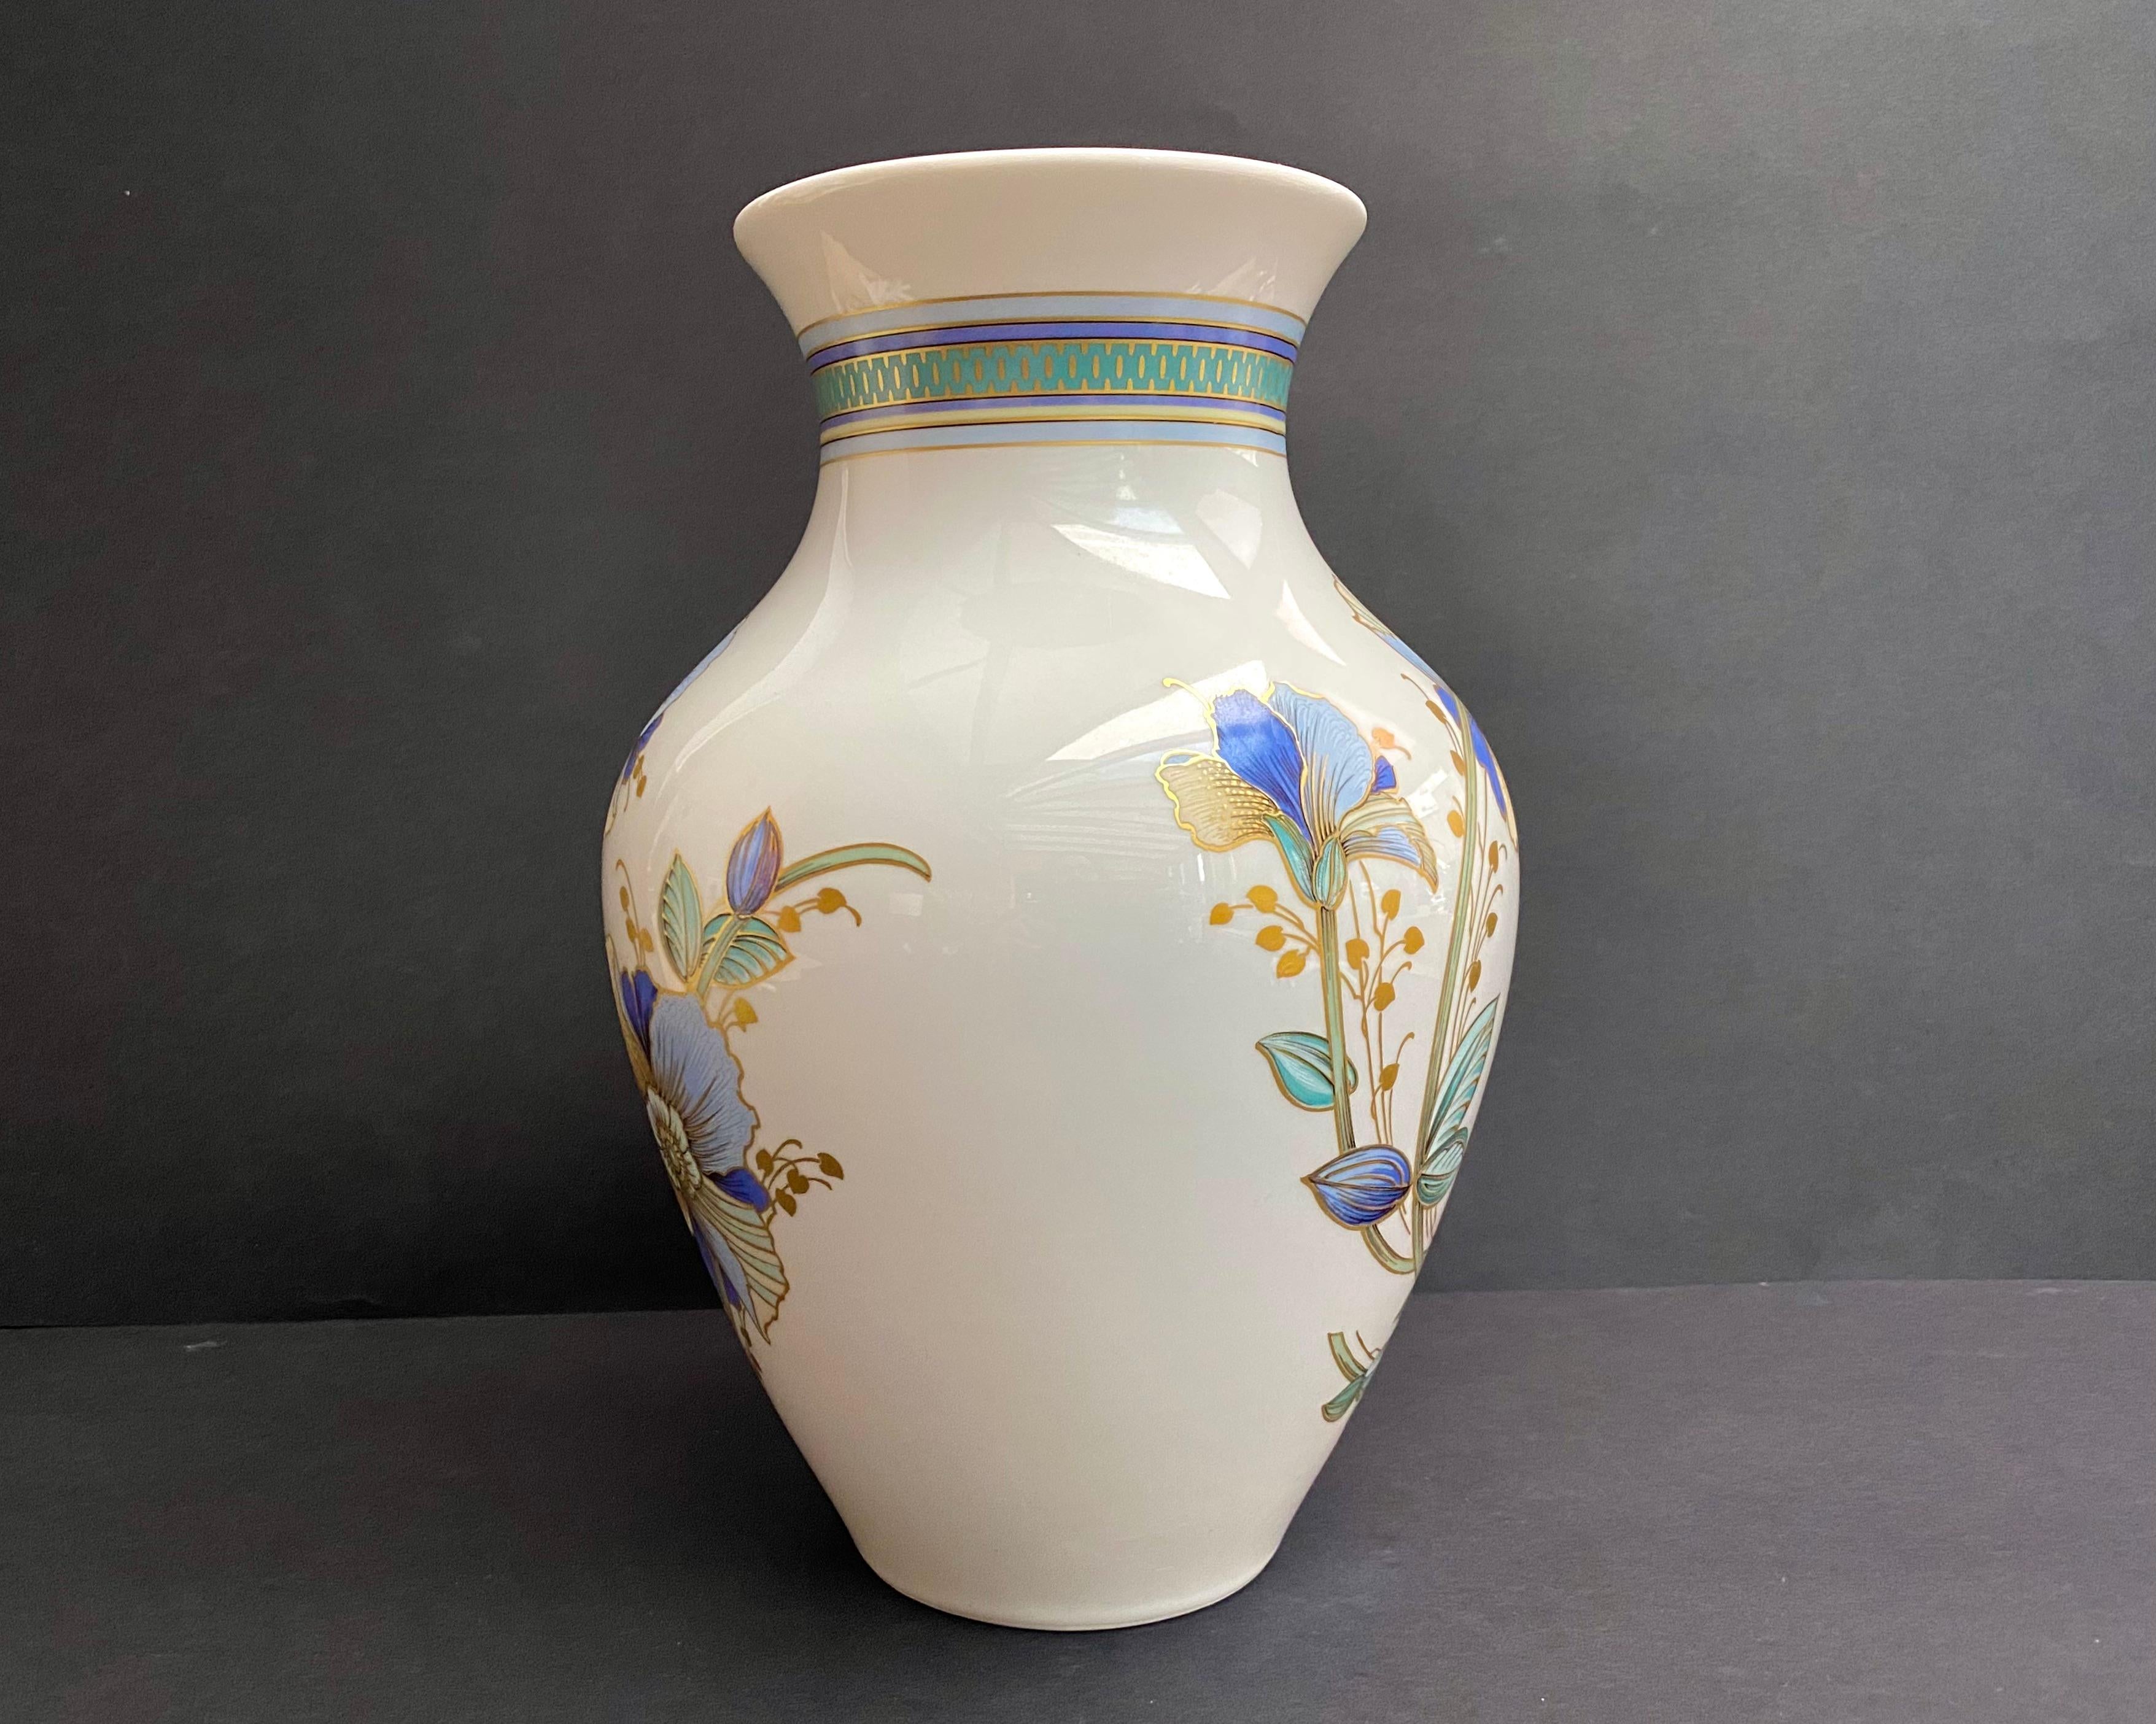 Wunderschöne Vintage-Vase/-Glas aus Porzellan mit Goldauflage.

Circa 1970er Jahre, hergestellt in Deutschland.

Gestempelt und nummeriert.

Handgemaltes florales Motiv.

Mit dieser Vase können Sie Komfort und Harmonie in jedem Raum schaffen.

Die